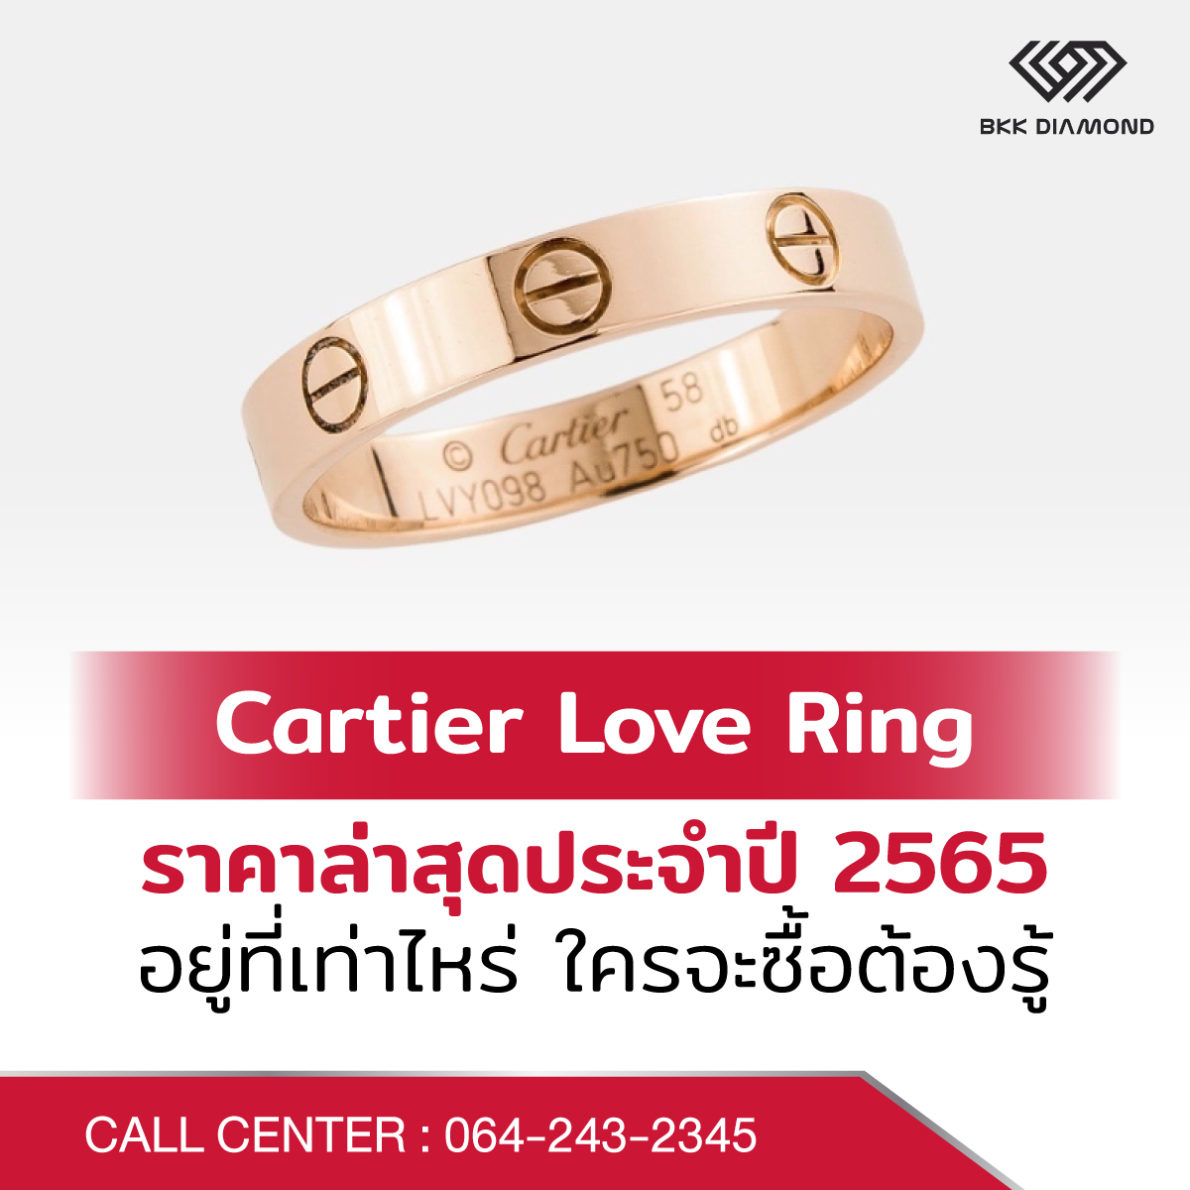 Cartier Love Ring ราคาล่าสุดประจำปี 2565 อยู่ที่เท่าไหร่ ใครจะซื้อต้องรู้